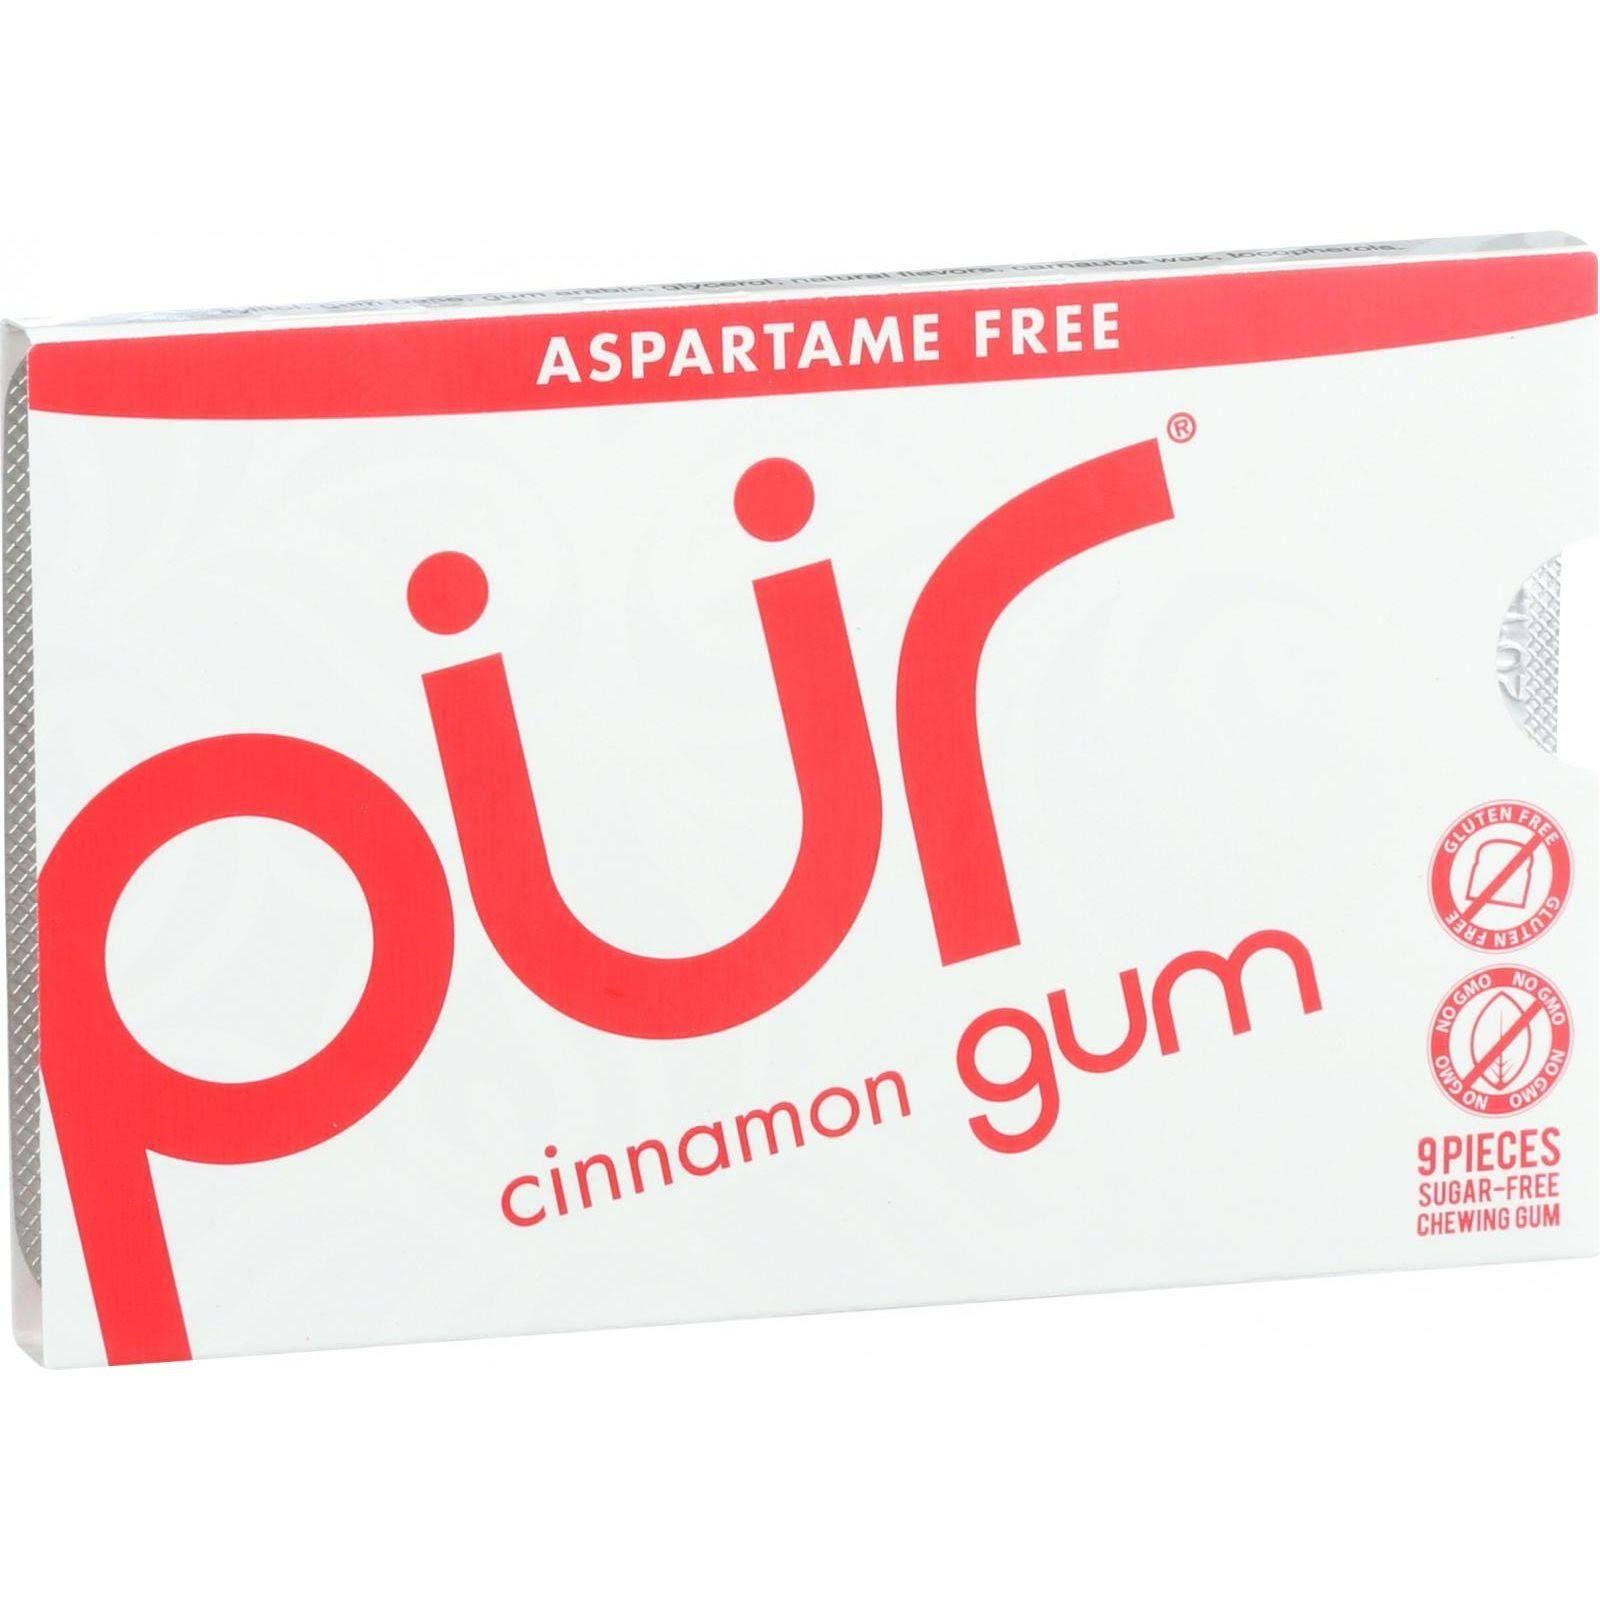 Pur Gum - Cinnamon, Aspartame Free